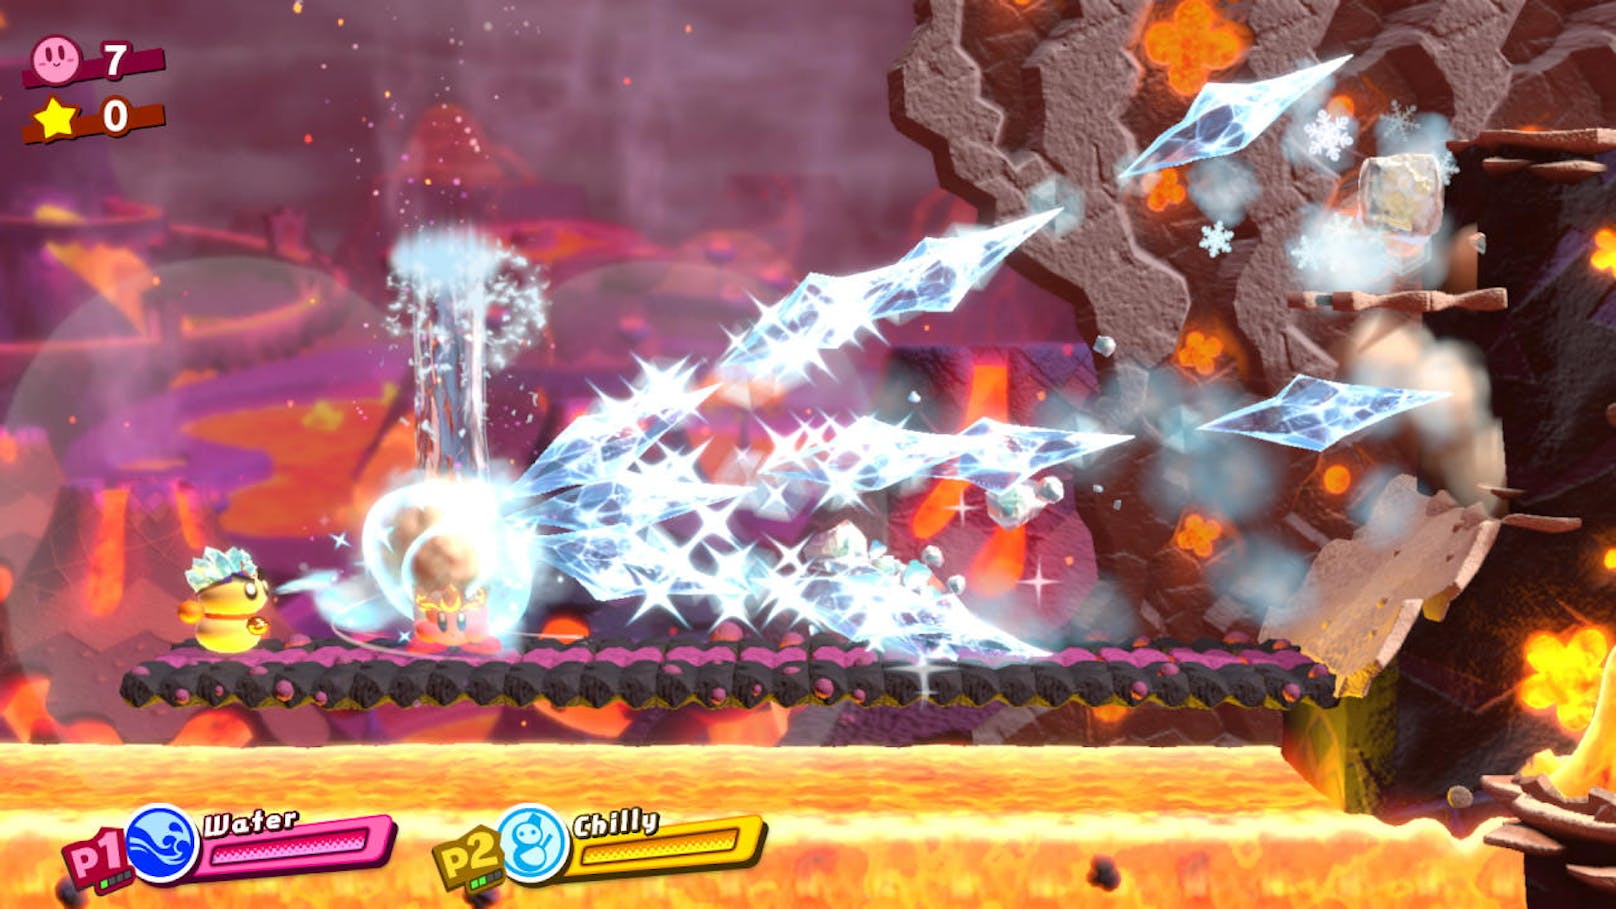 Nach zwei Levels in einer Demo-Version des Spiels war uns klar: Kirby Star Allies versprüht mit jeder Faser seines Wesens einfach gute Laune. Musik, Optik und Gameplay vereinen sich zu einem spaßigen Spiel, das sich auch für jüngere Spieler hervorragend eignet.